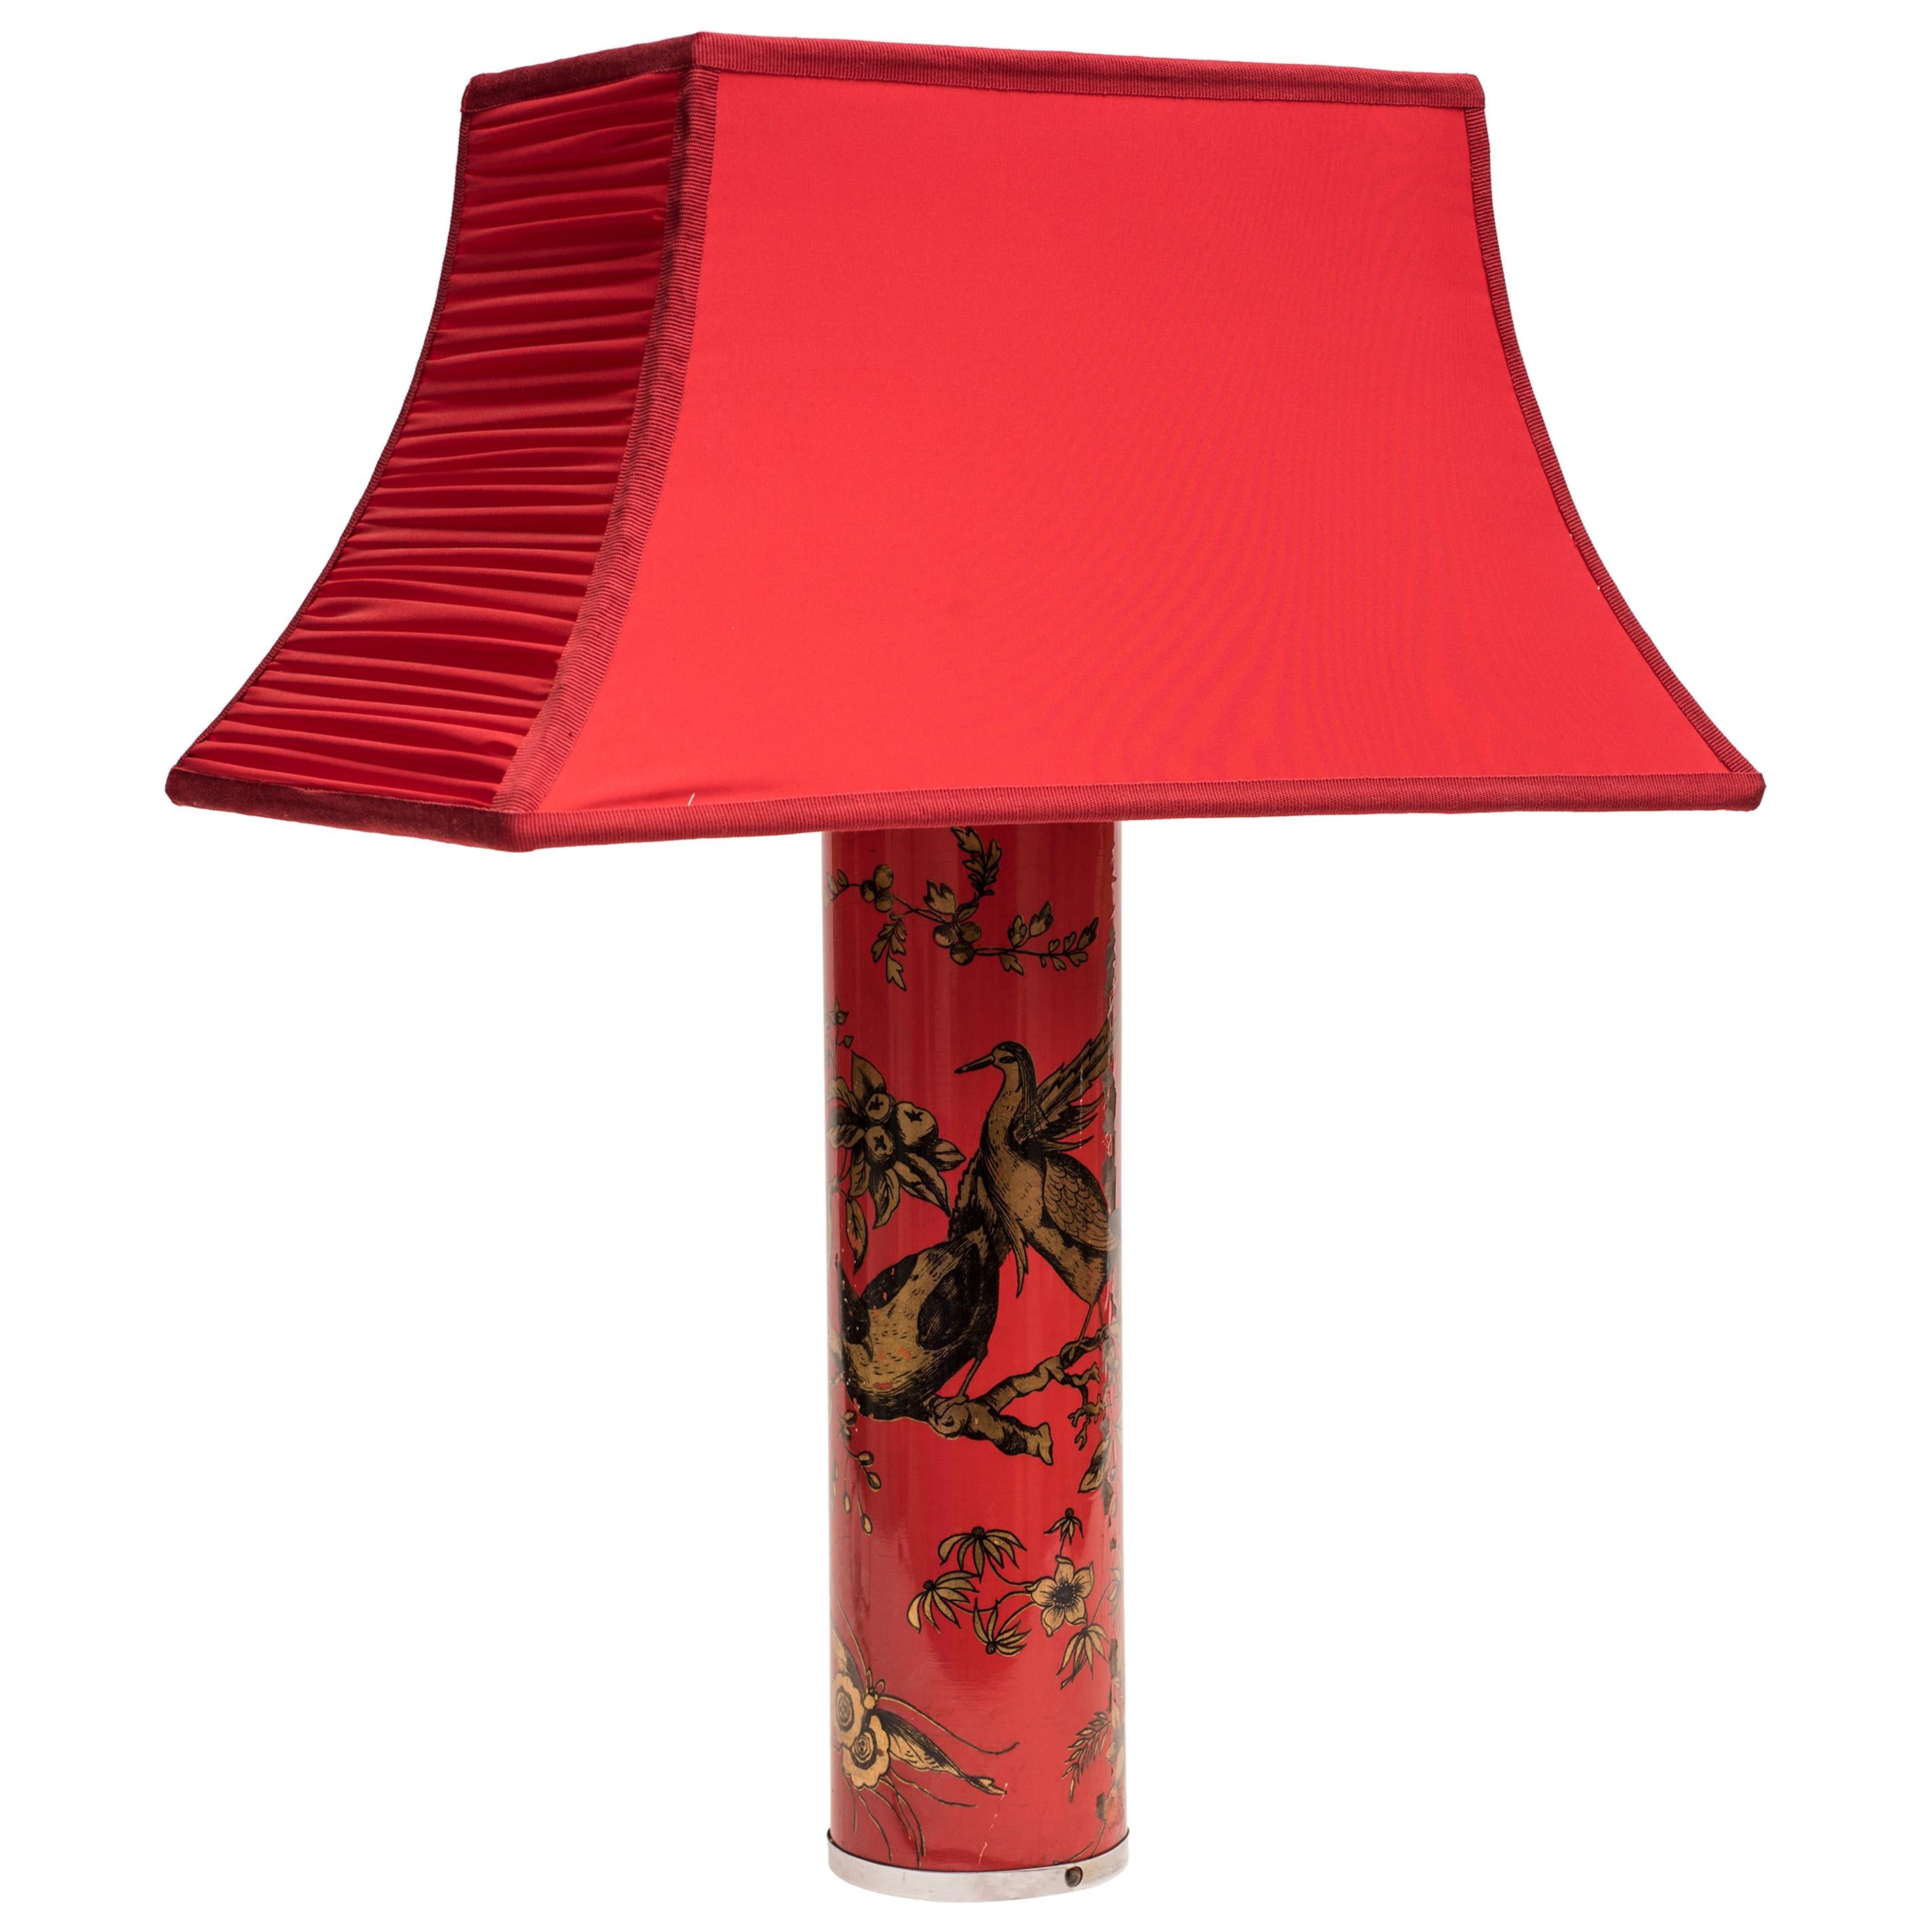 Rote Vintage-Lampe von Piero Fornasetti, 1960er Jahre